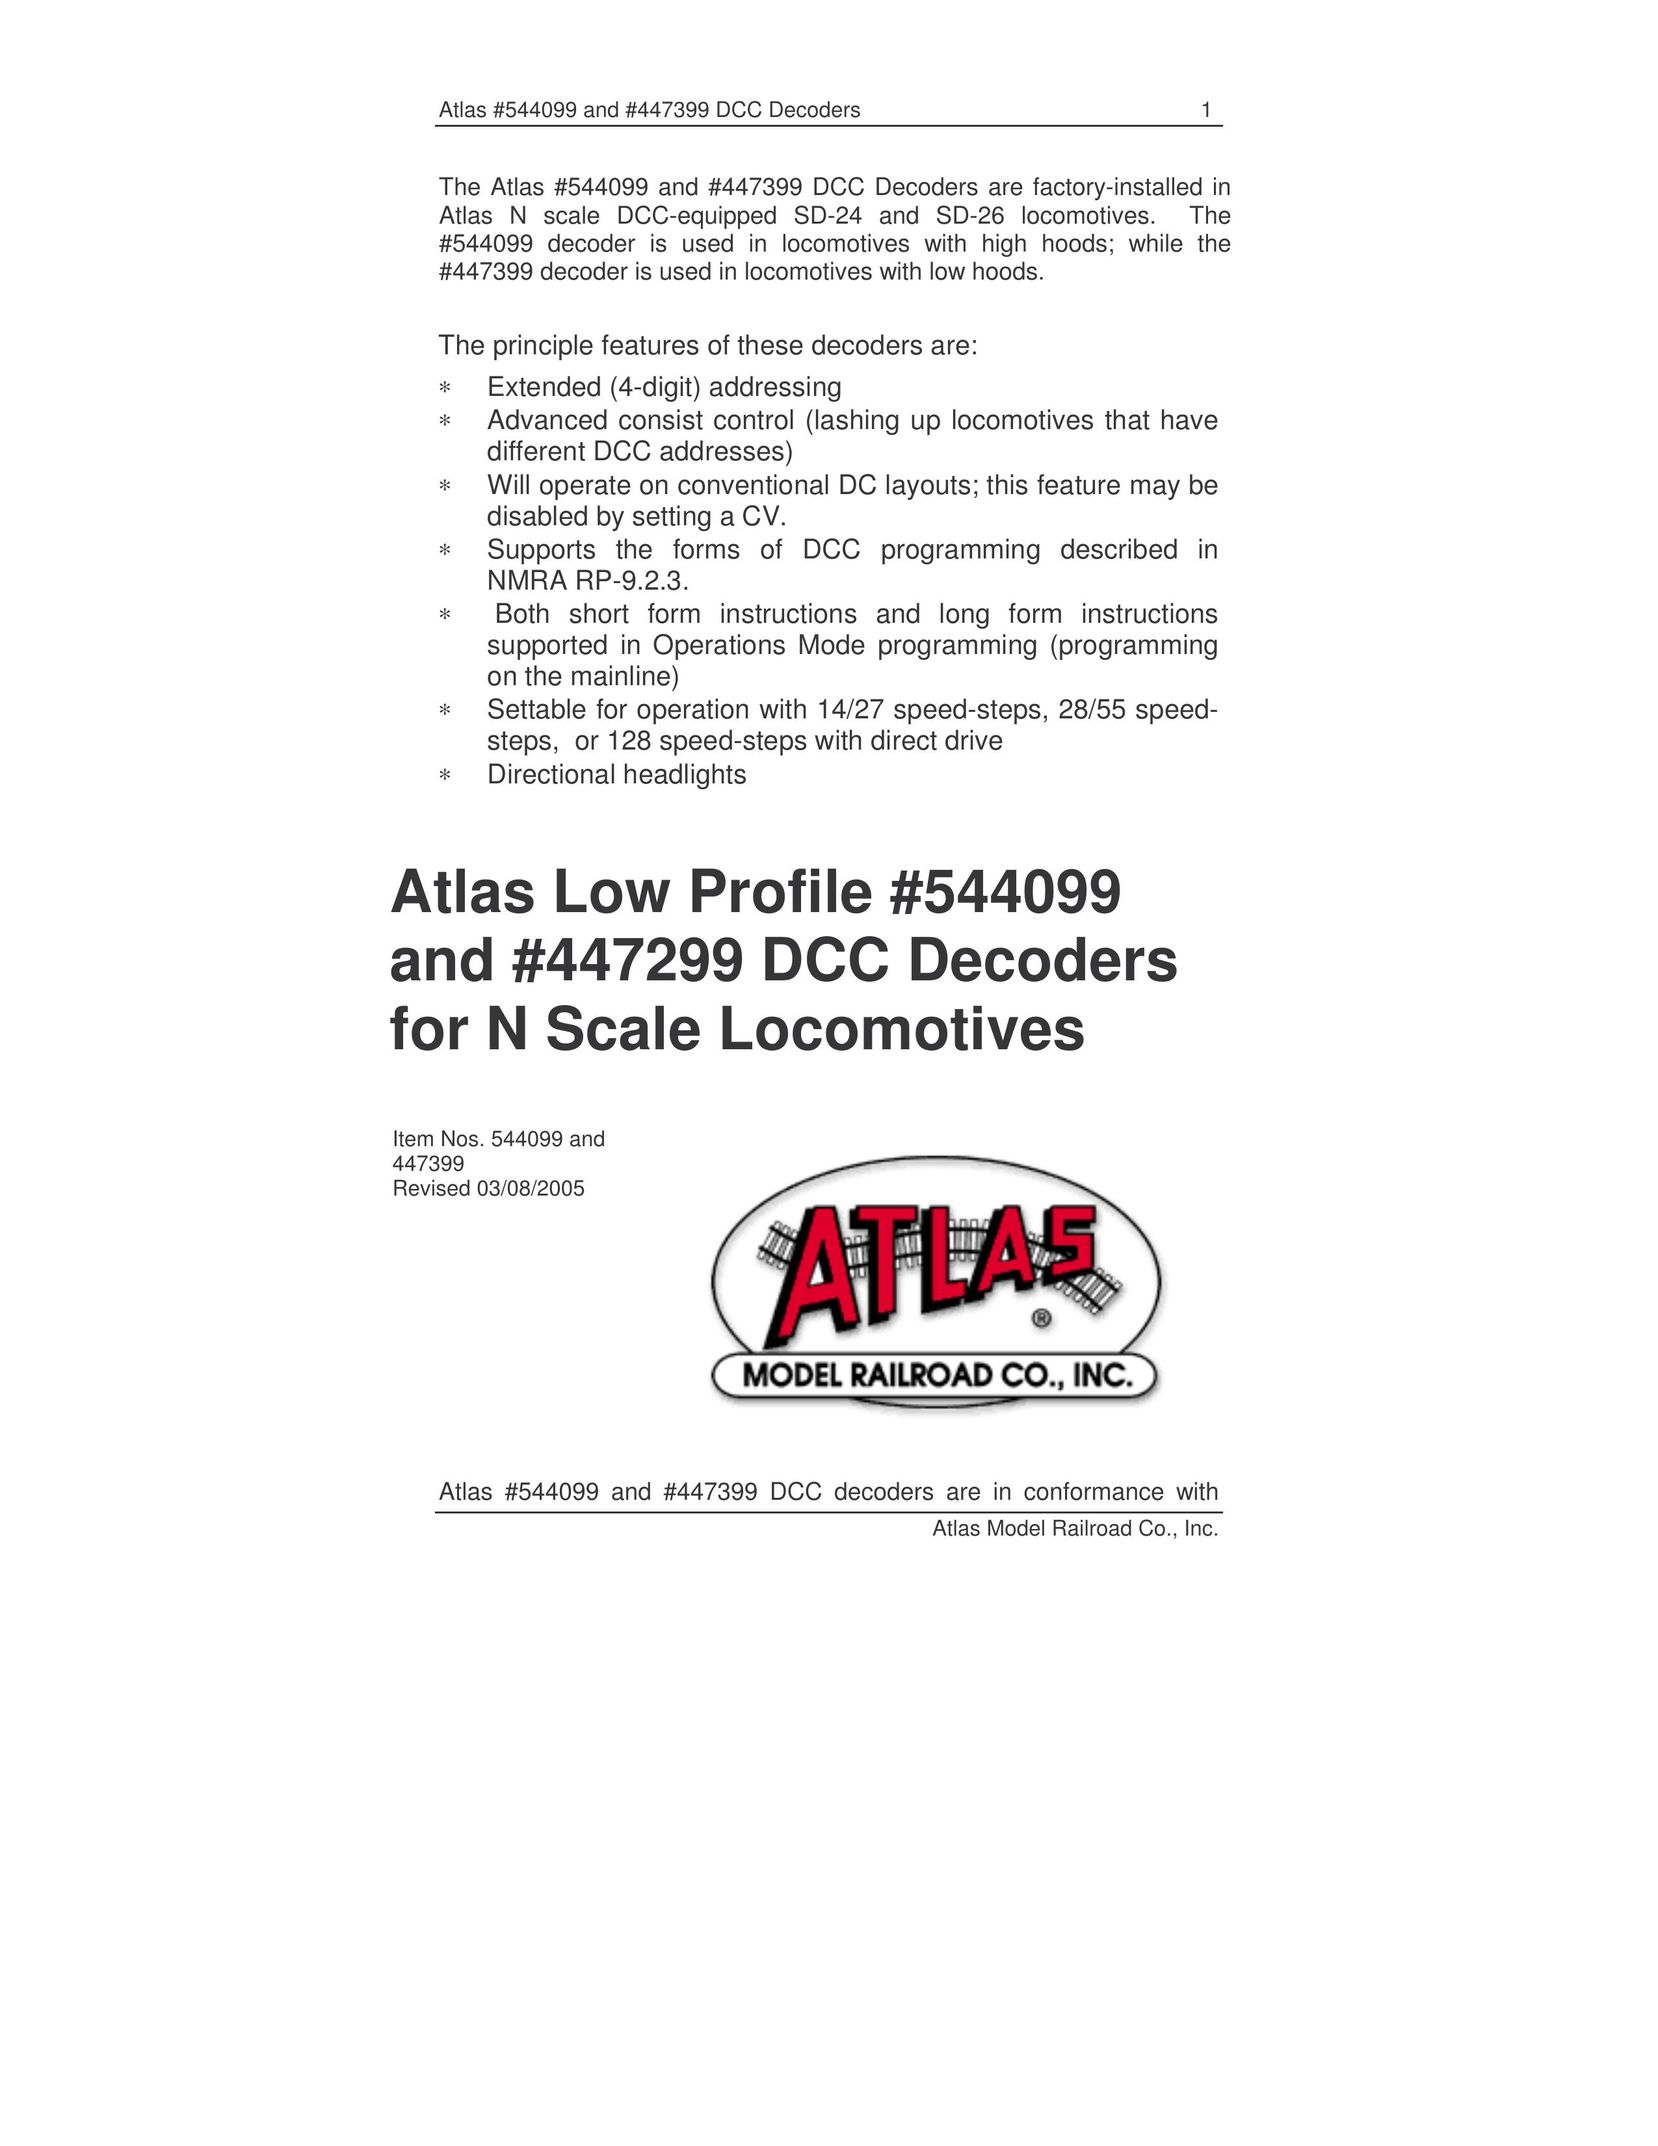 Atlas 544099 Saw User Manual